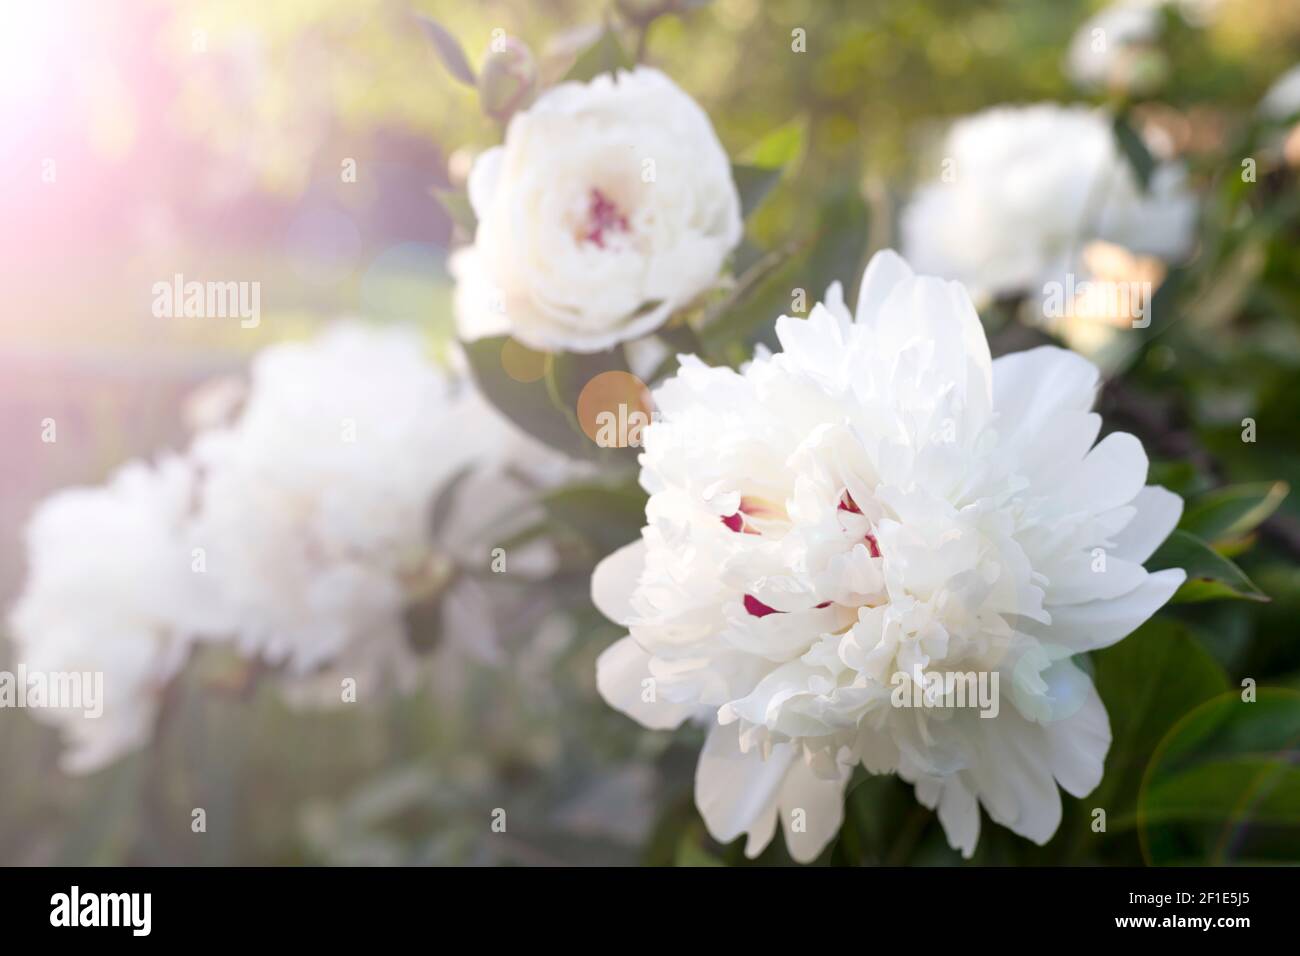 Schöne weiße Pfingstrose Blume. Nahaufnahme. Blumenhintergrund für Postkarte, Beschriftung, Malerei, Hochzeitskarte, Banner, Blumengeschäft Stockfoto